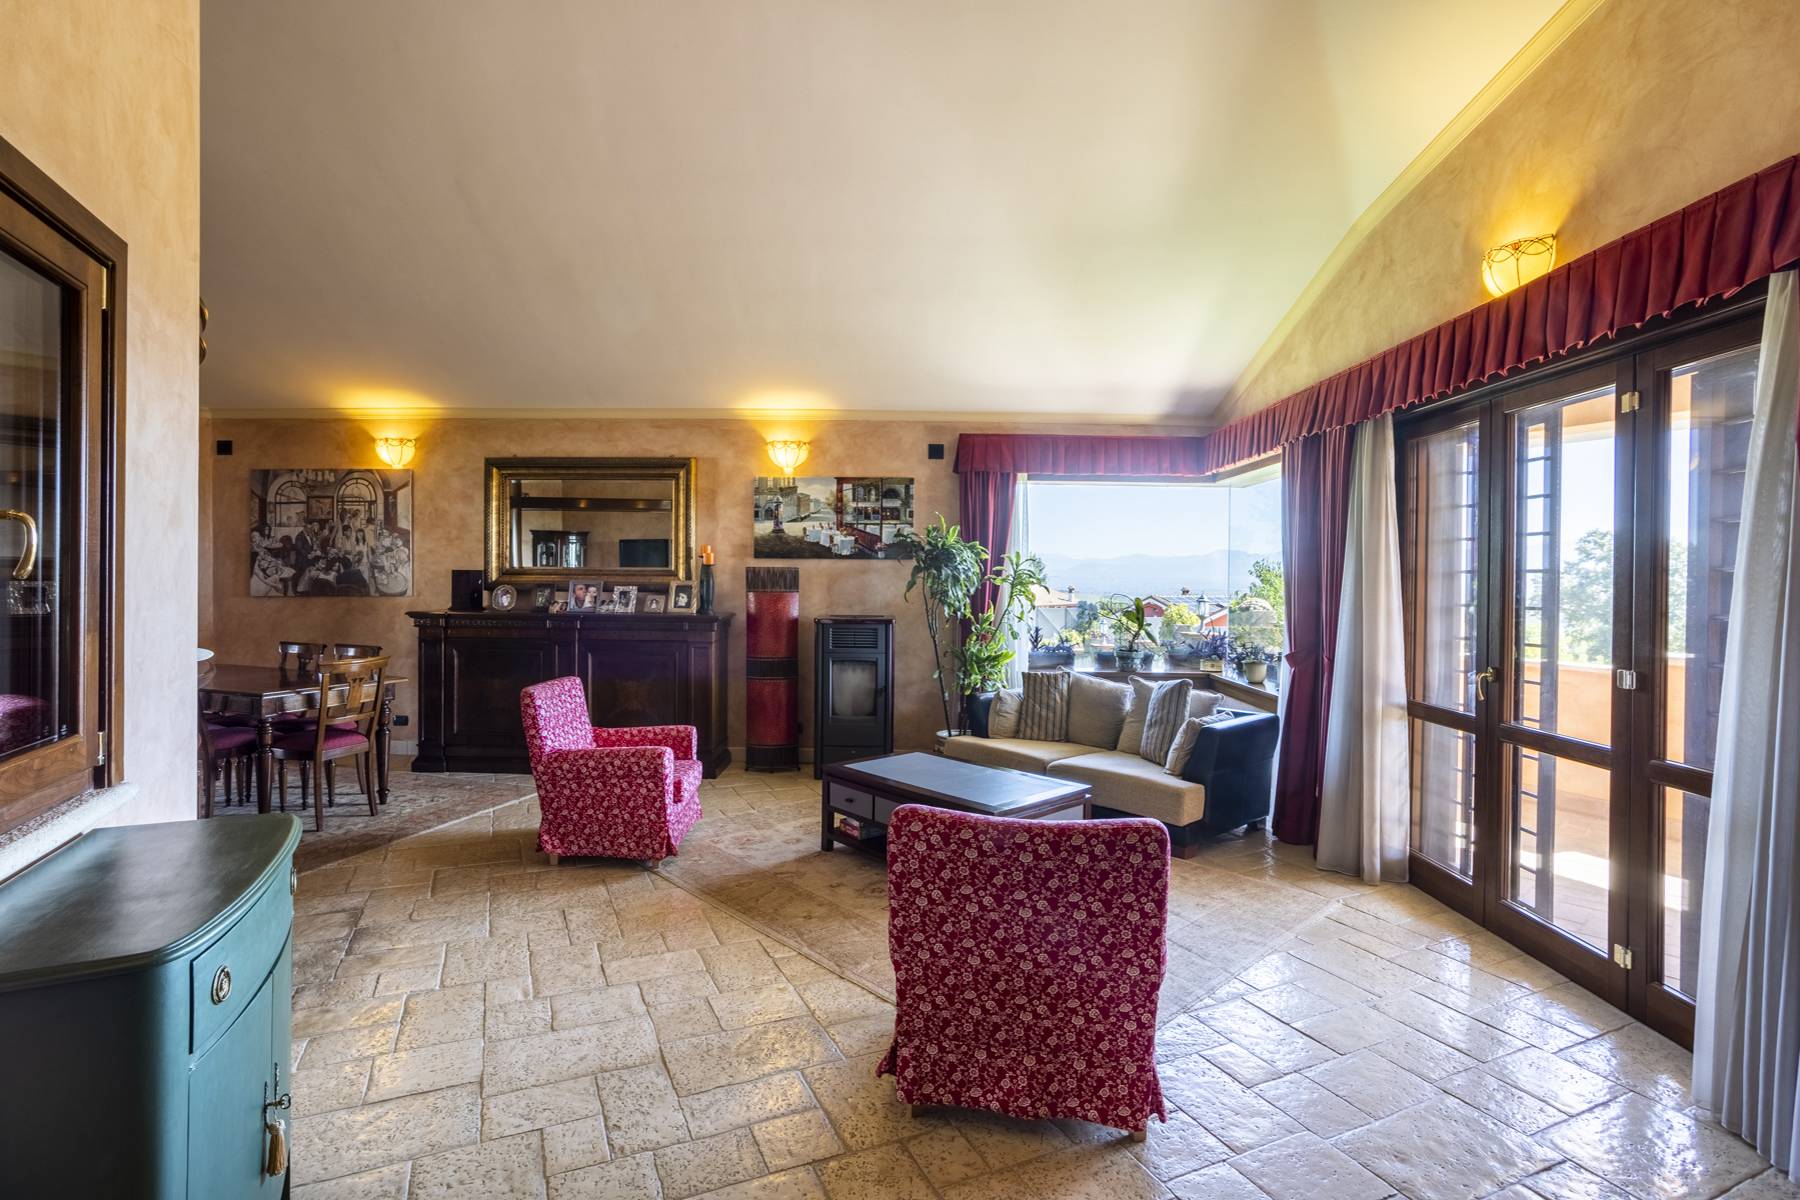 Villa in Vendita a Riano: 5 locali, 500 mq - Foto 20